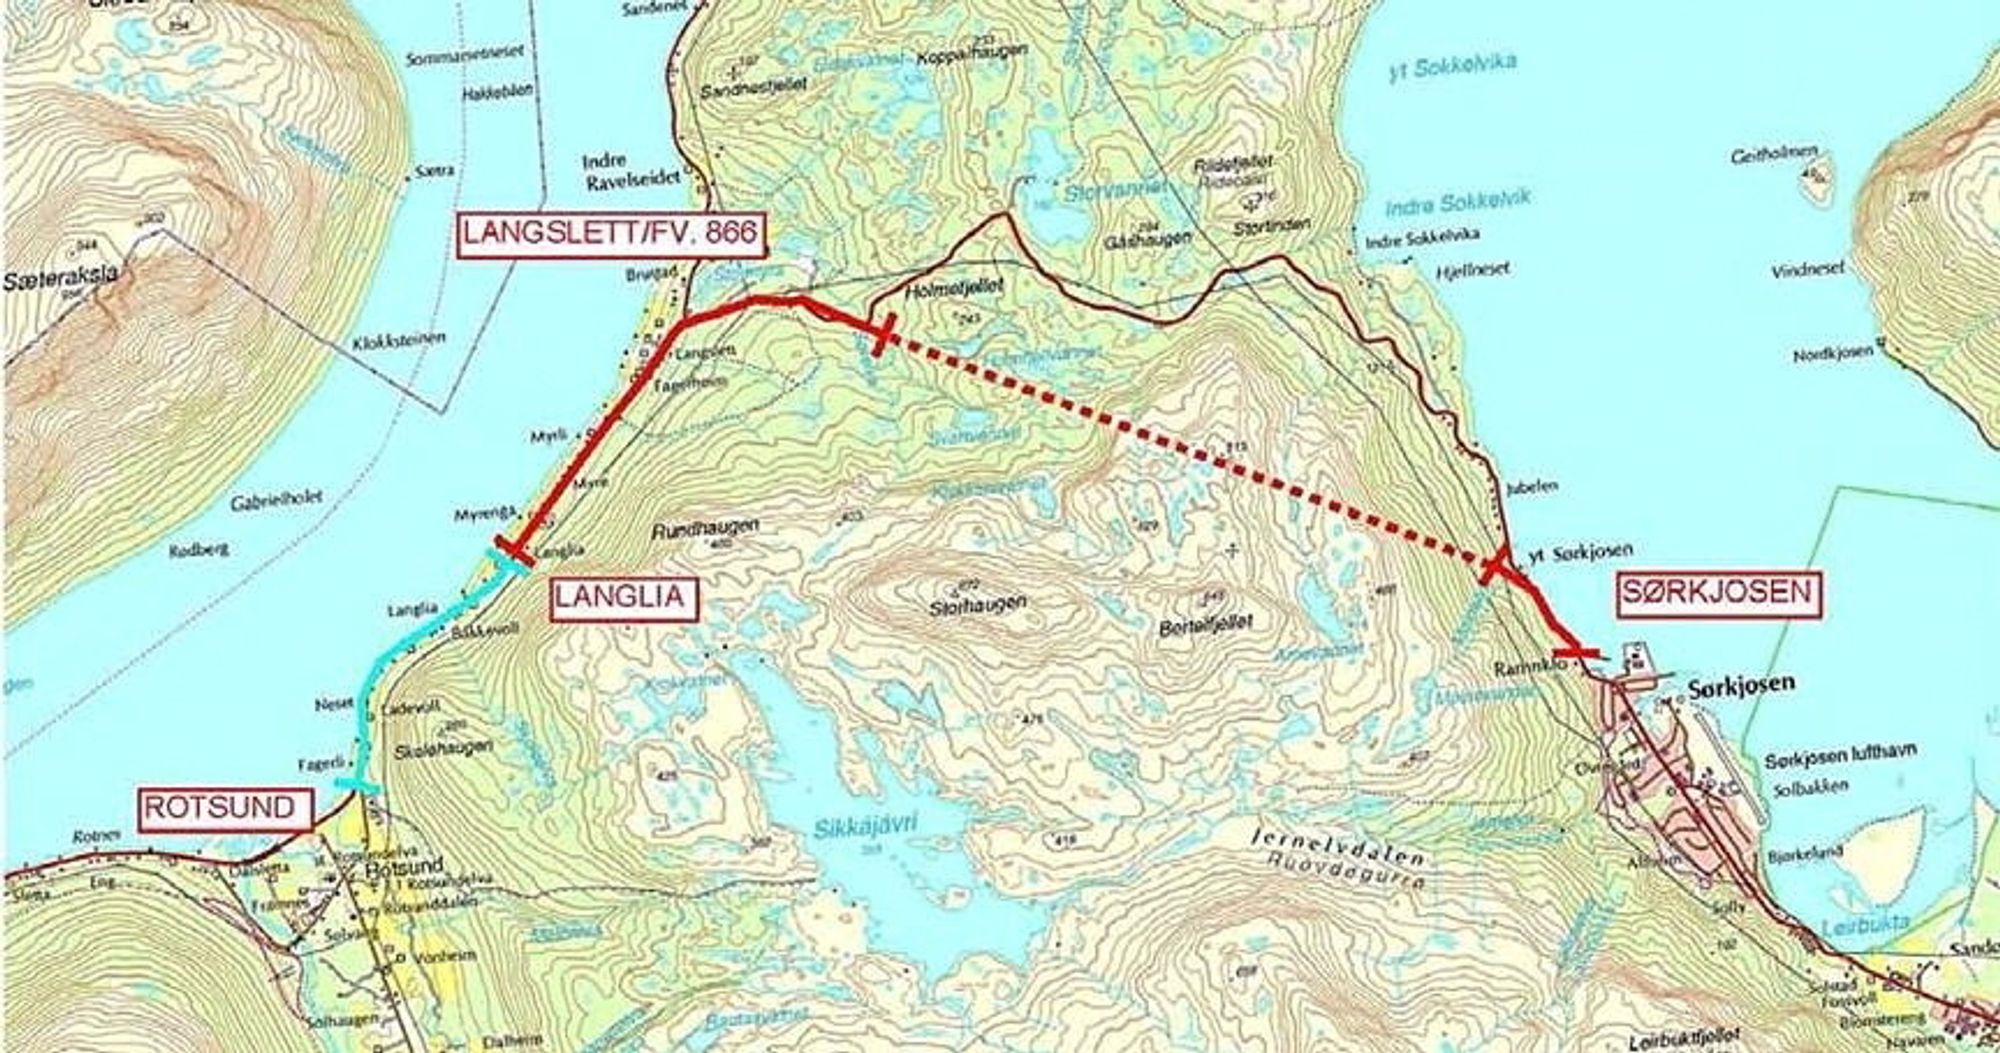 De som vil drive tunnelen gjennom Sørkjosfjellet, må gi anbud innen 12. juni. (Ill.: Statens vegvesen)